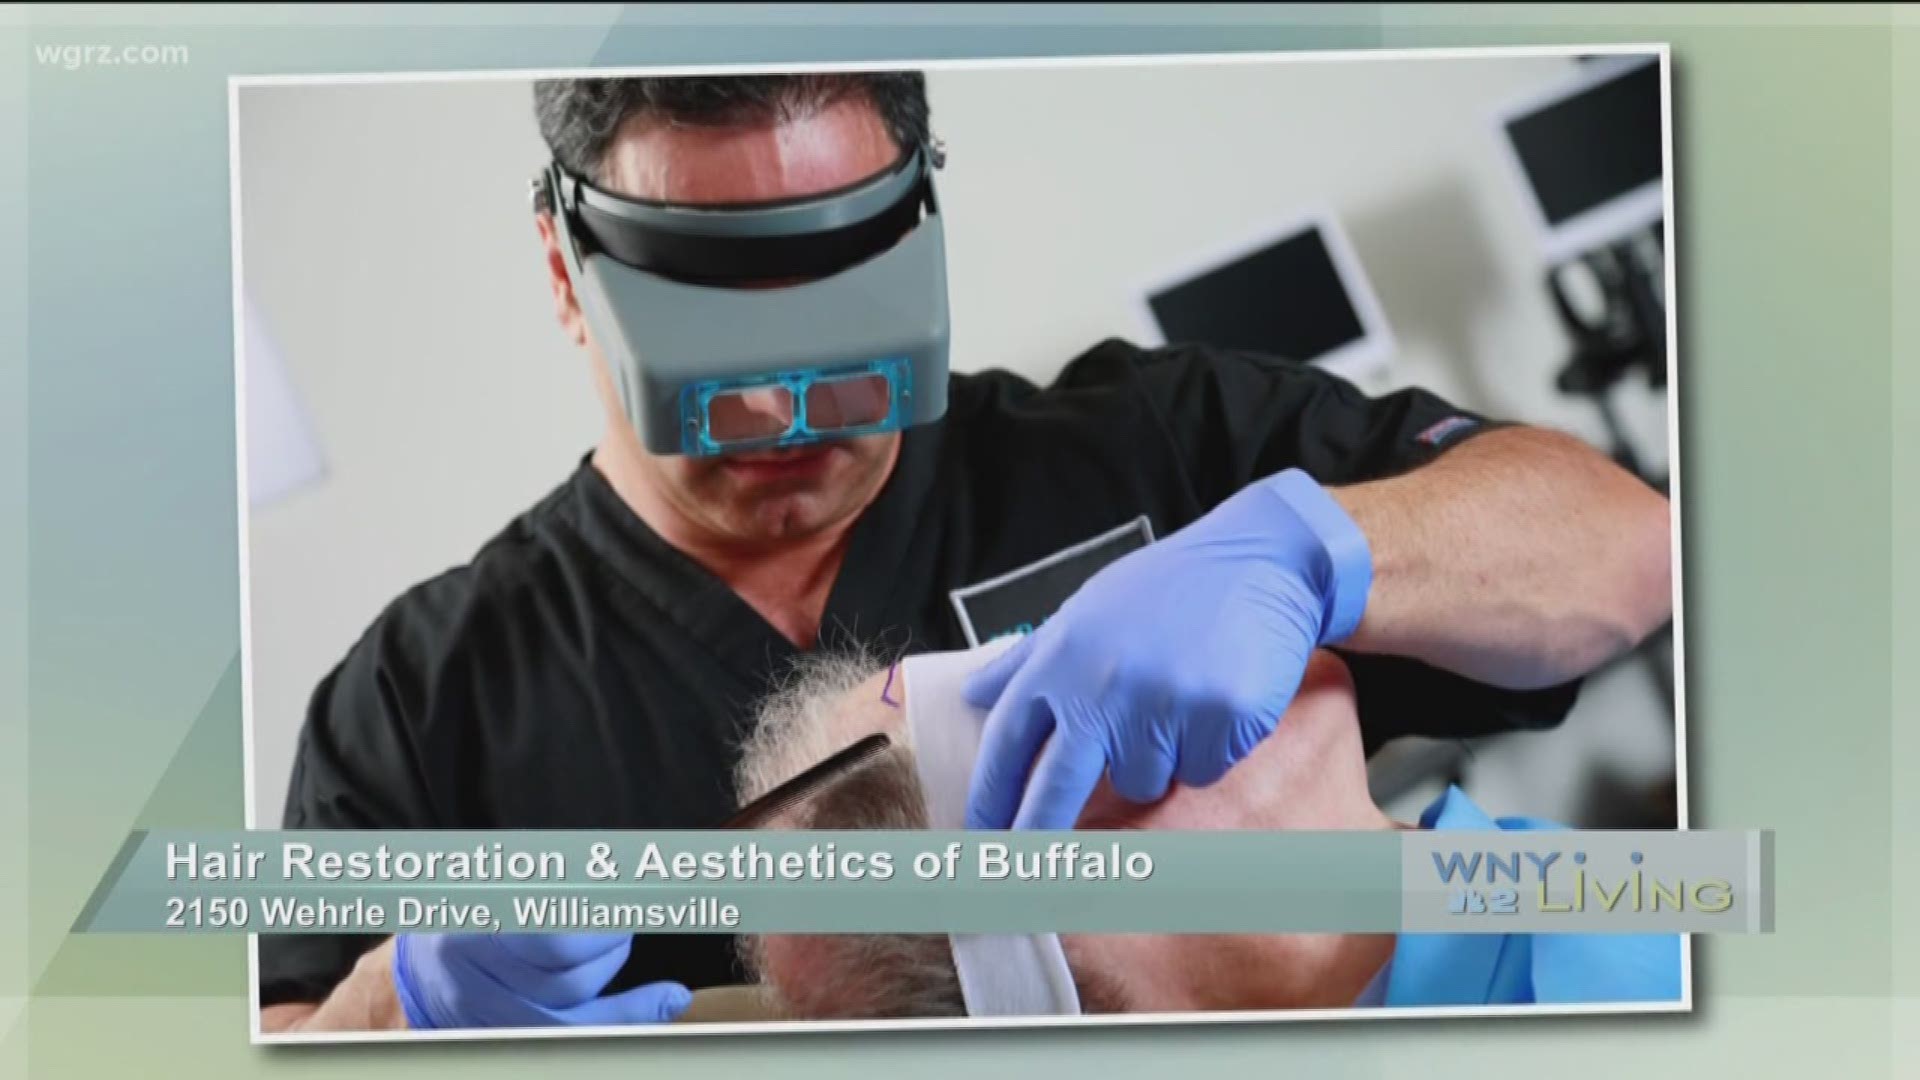 WNY Living - January 28 - Hair Restoration & Aesthetics of Buffalo